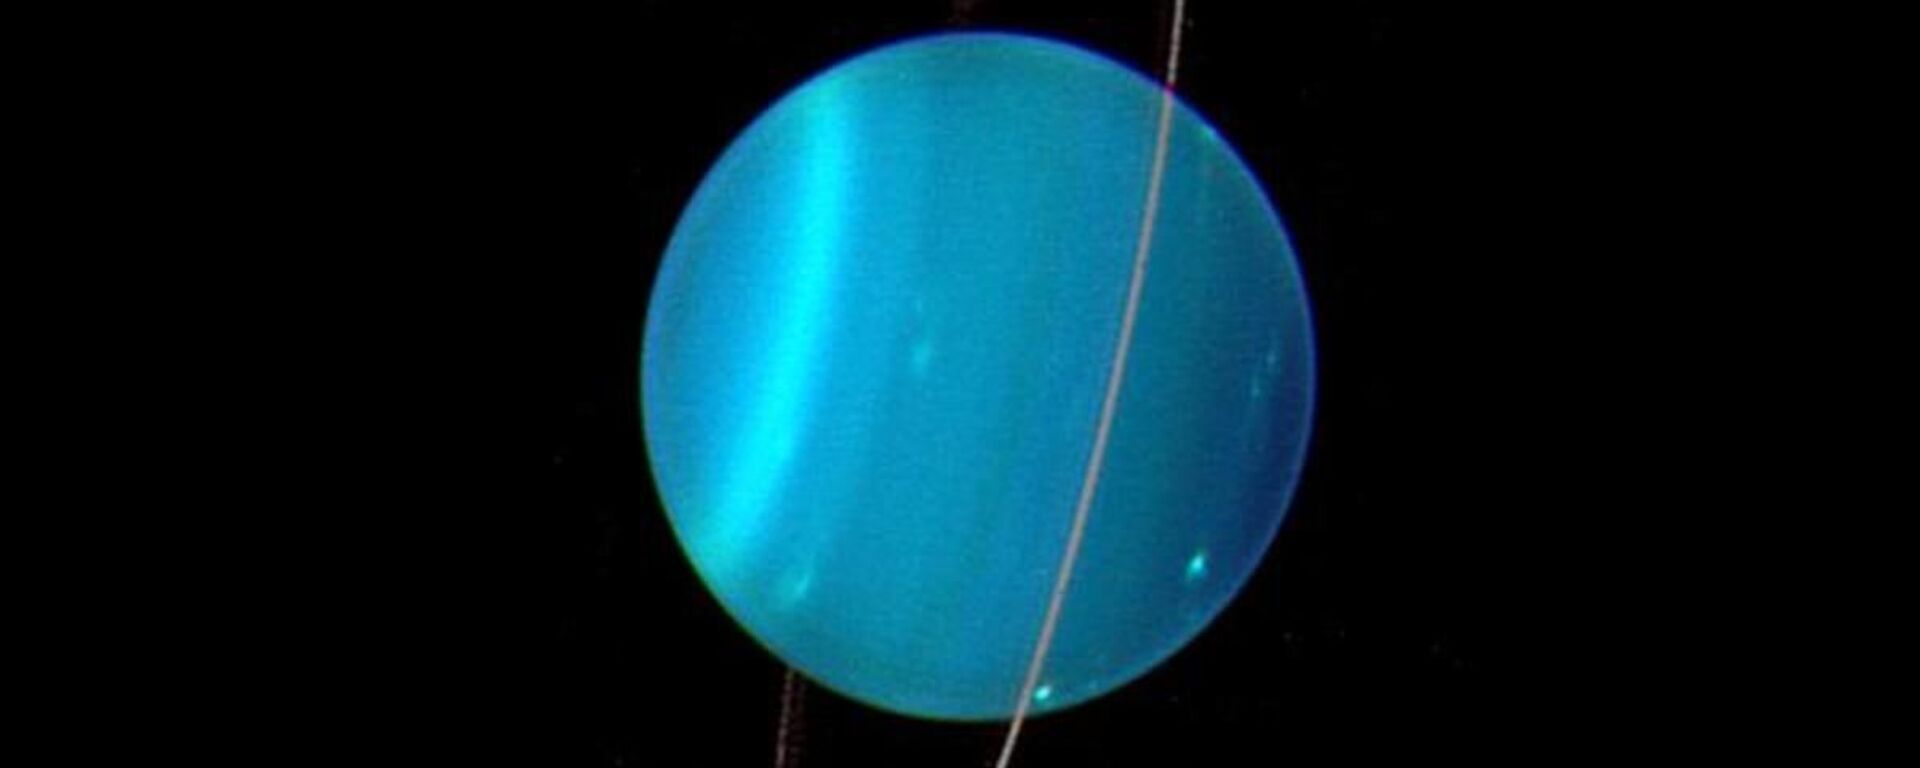 Urano - Sputnik Mundo, 1920, 06.04.2020